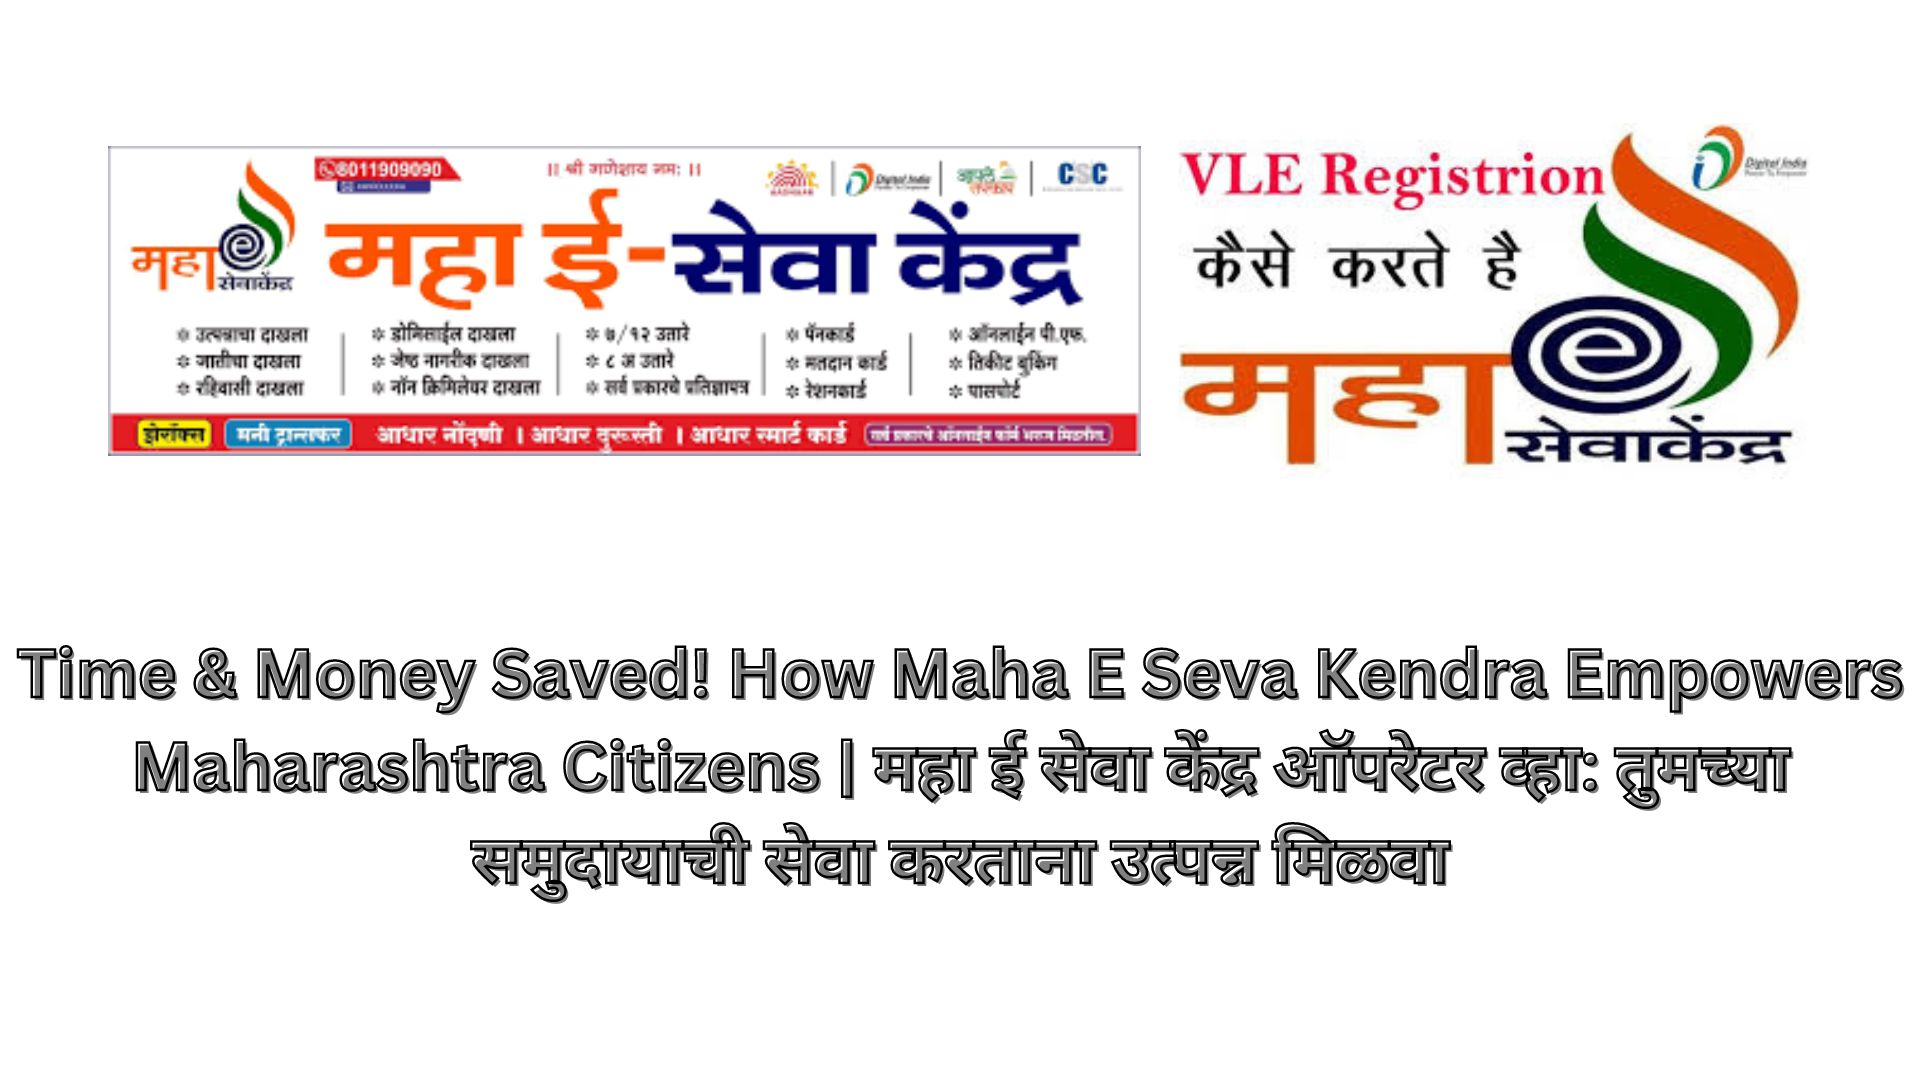 Time & Money Saved! How Maha E Seva Kendra Empowers Maharashtra Citizens | महा ई सेवा केंद्र ऑपरेटर व्हा: तुमच्या समुदायाची सेवा करताना उत्पन्न मिळवा